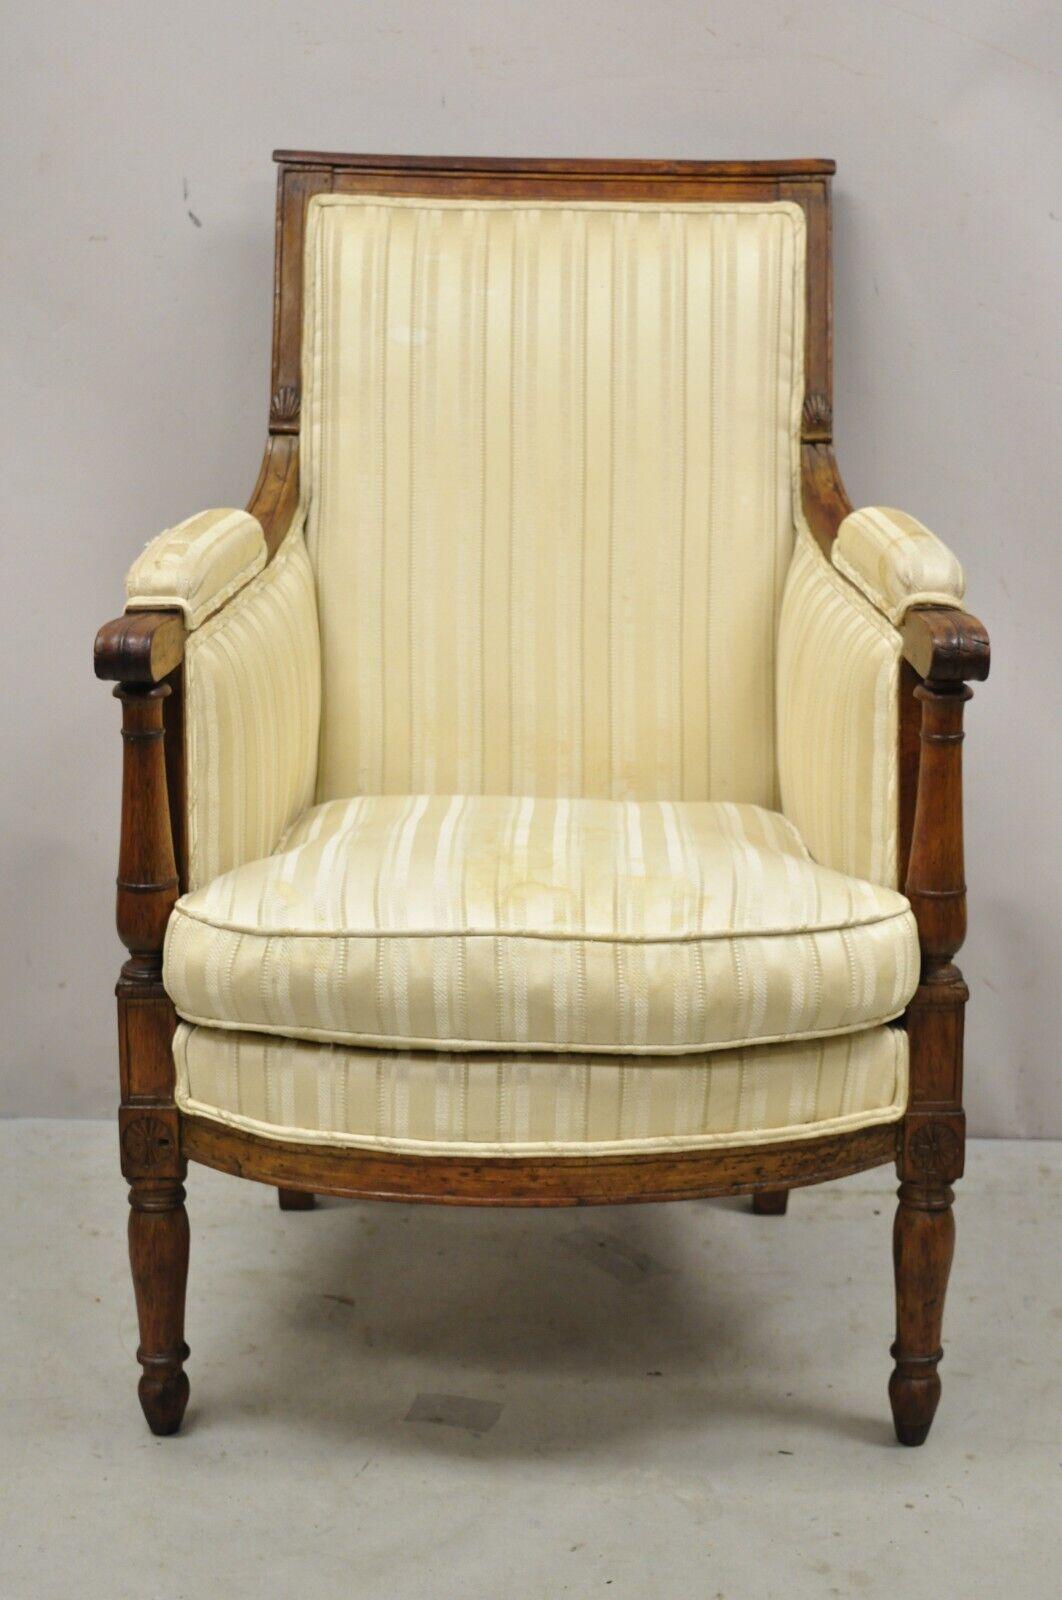 Antike 19. Jahrhundert Französisch Louis XVI neoklassischen Stil Walnuss Bergere Club Lounge Sessel. Artikel verfügt über eine wunderbare antike Tischlerei und Konstruktion, wünschenswert Patina, Massivholzrahmen, distressed Finish, schön